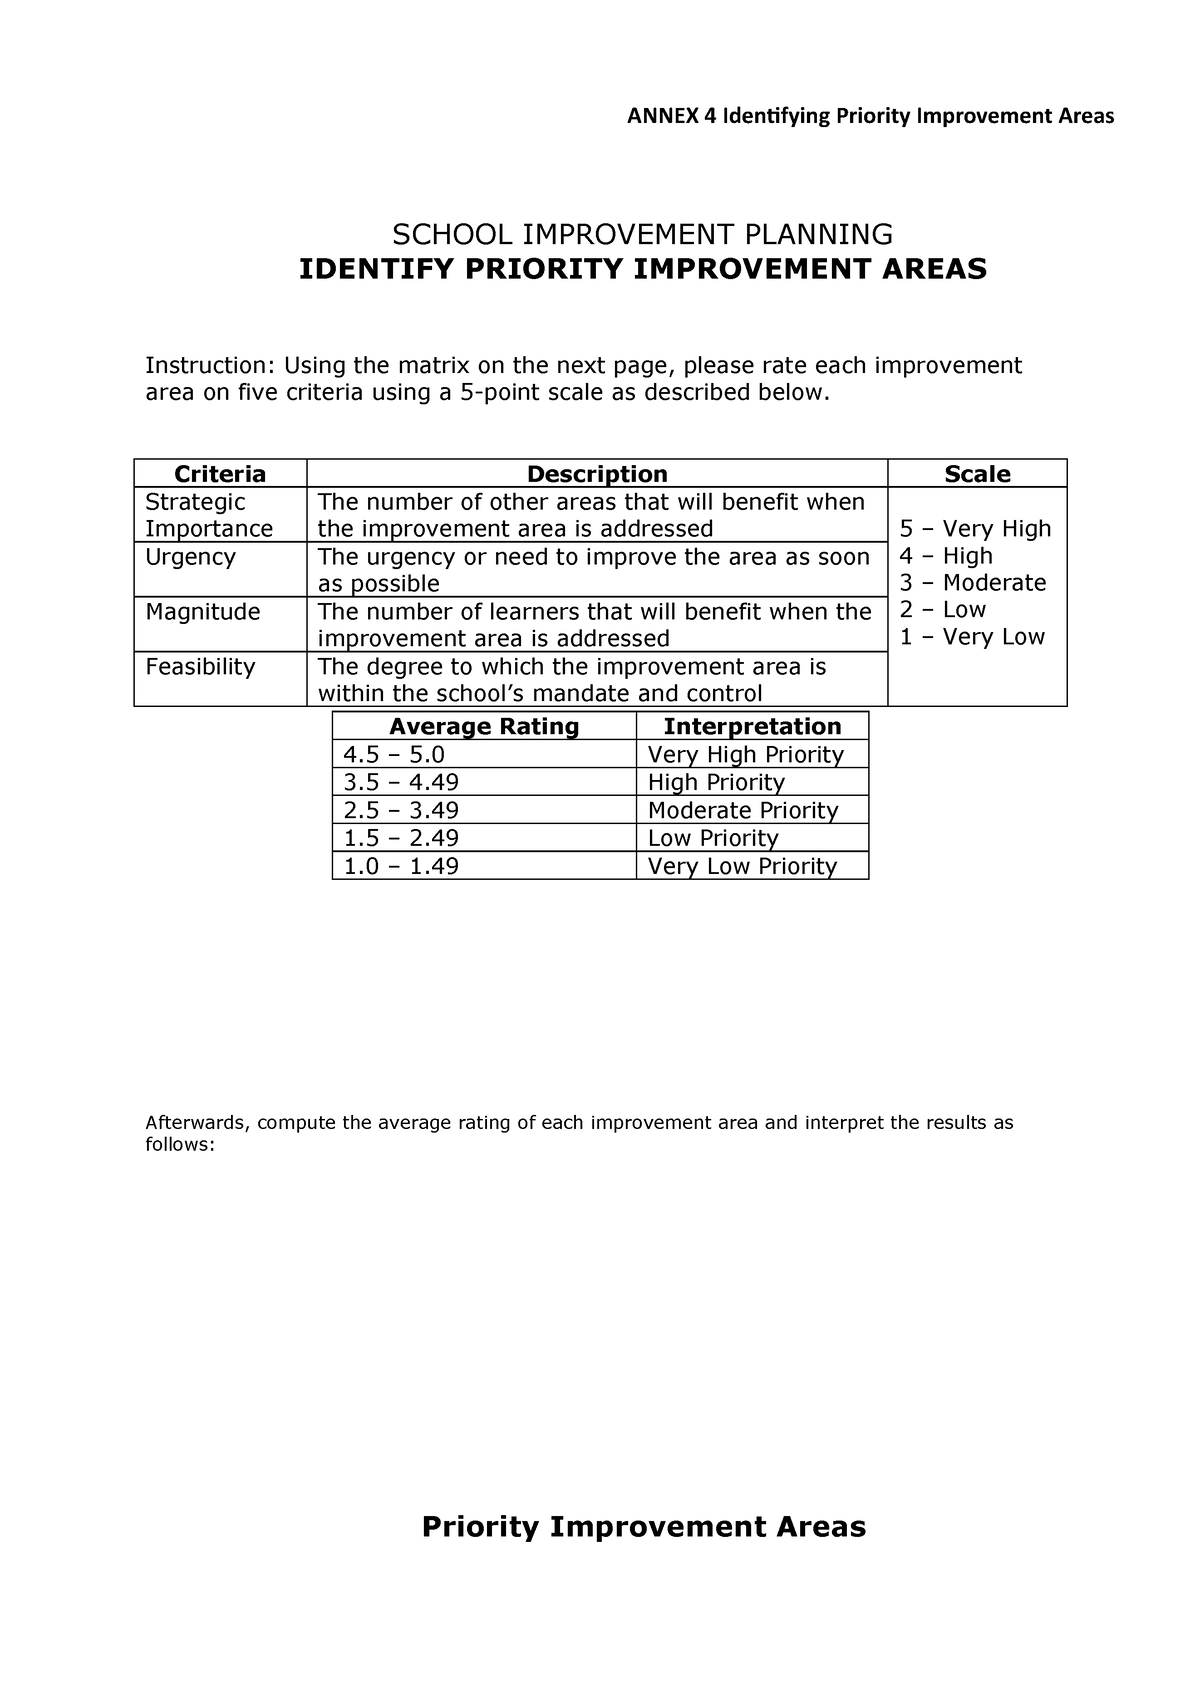 SIP Annex 4 Identifying Priority Improvement Areas ANNEX 4